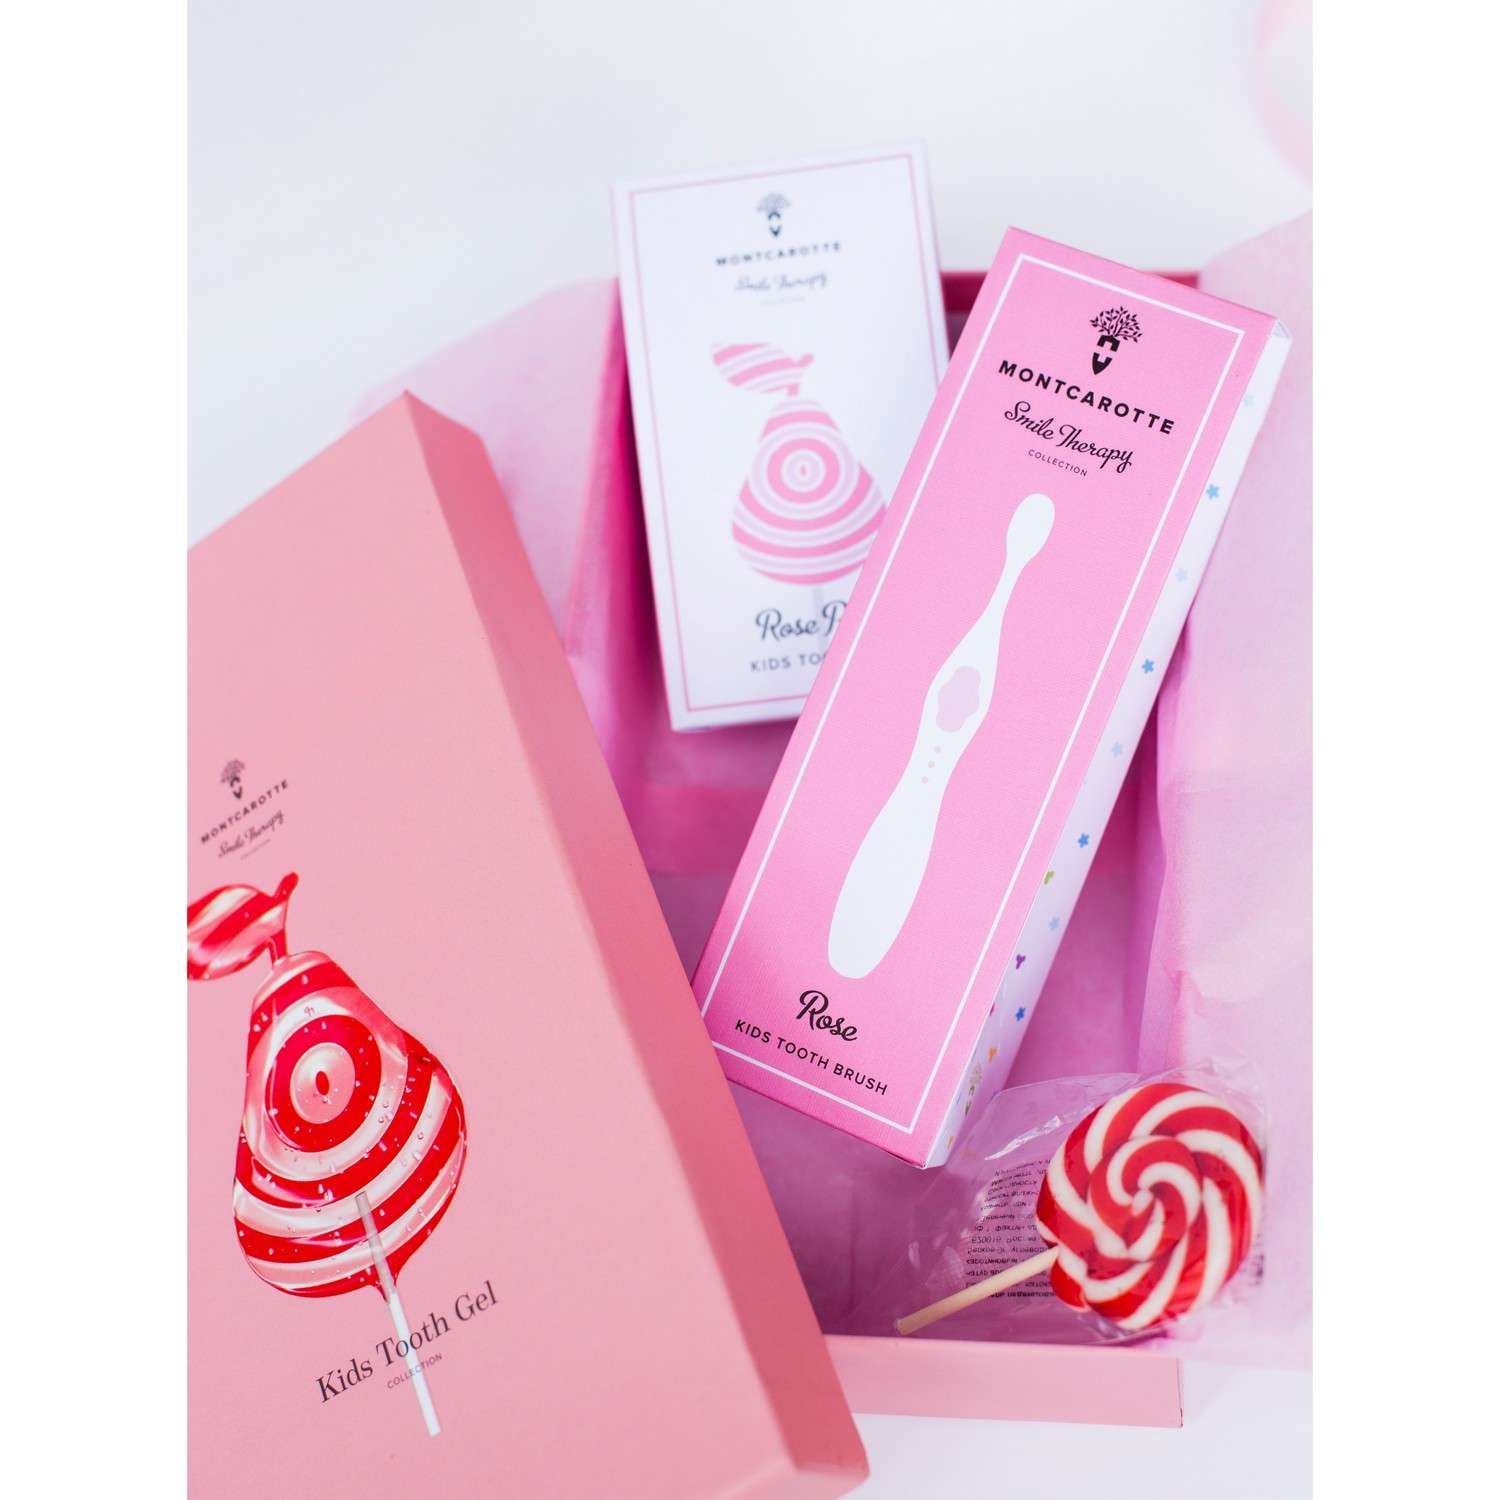 Подарочный набор Montcarotte гелеобразная зубная паста Розовая Груша + Зубная щетка Розовая - фото 22